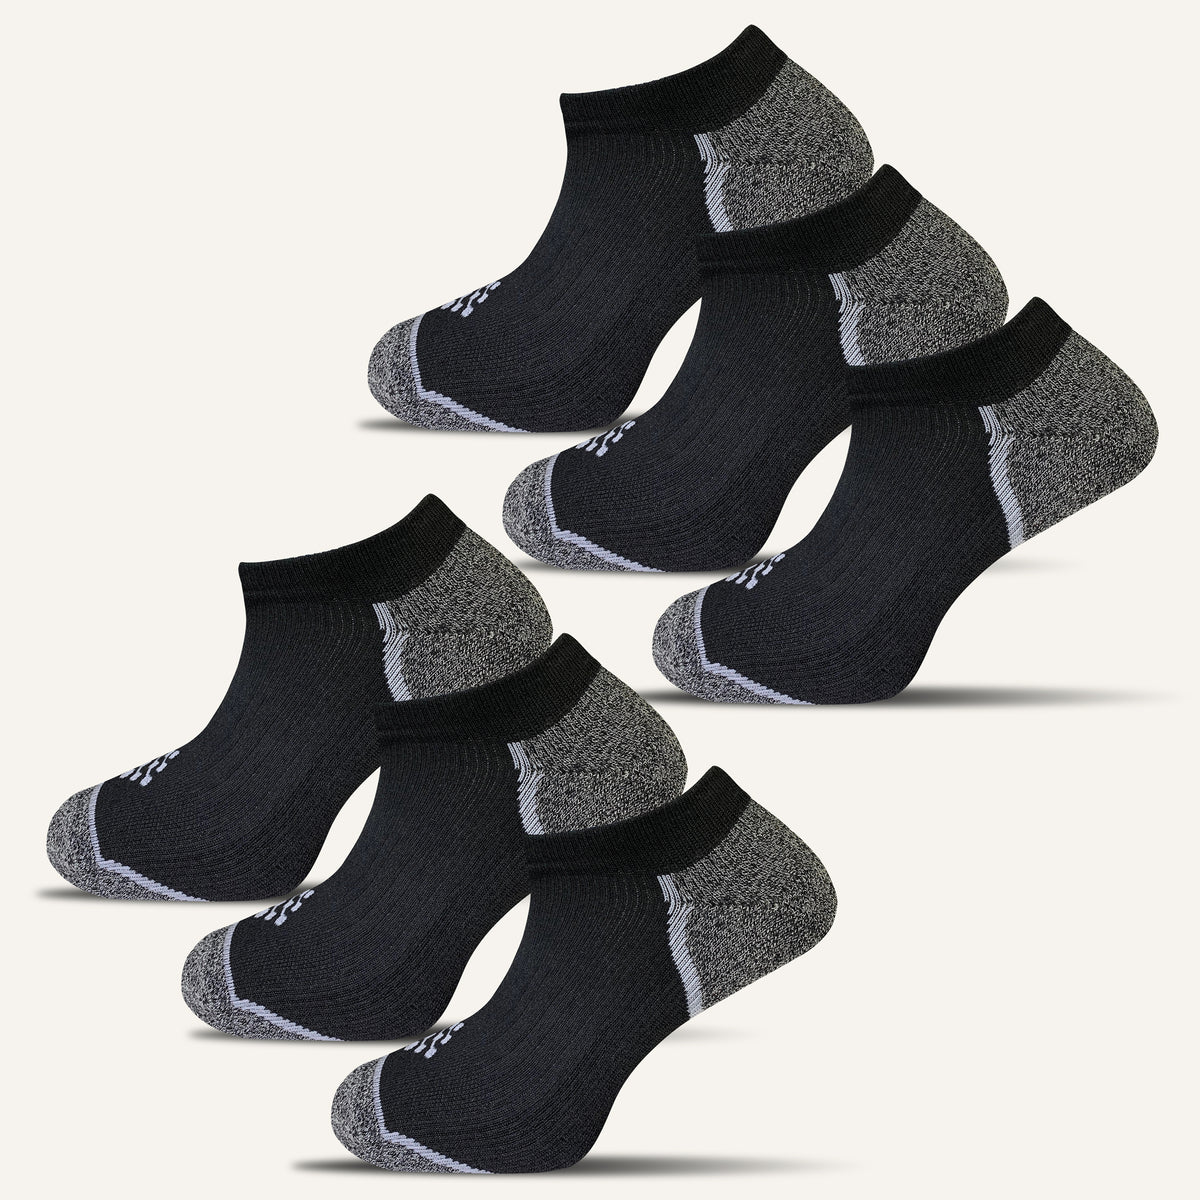 Men's Sport Cushioned Ankle Socks - 6 Pair – True Energy Socks